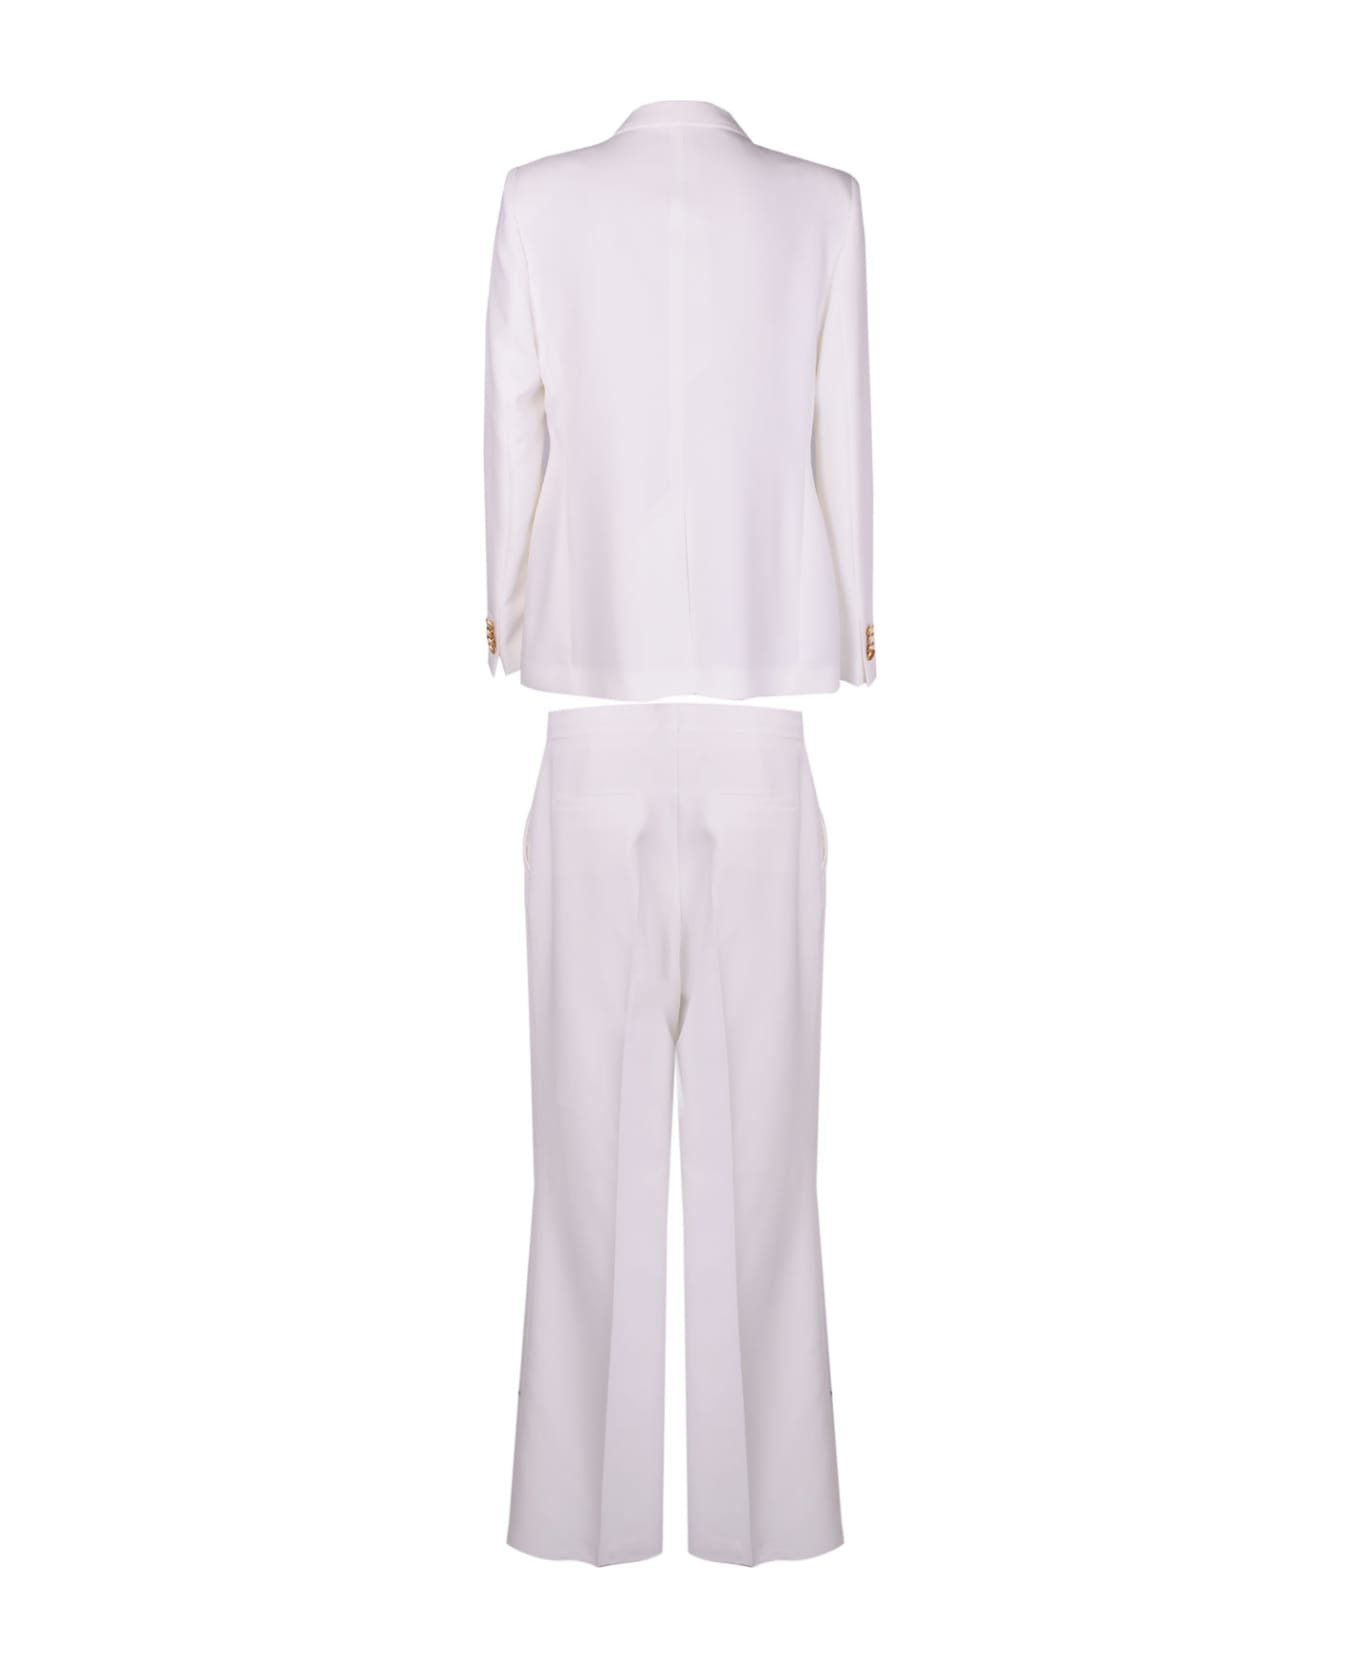 Tagliatore Two-piece Dress - White